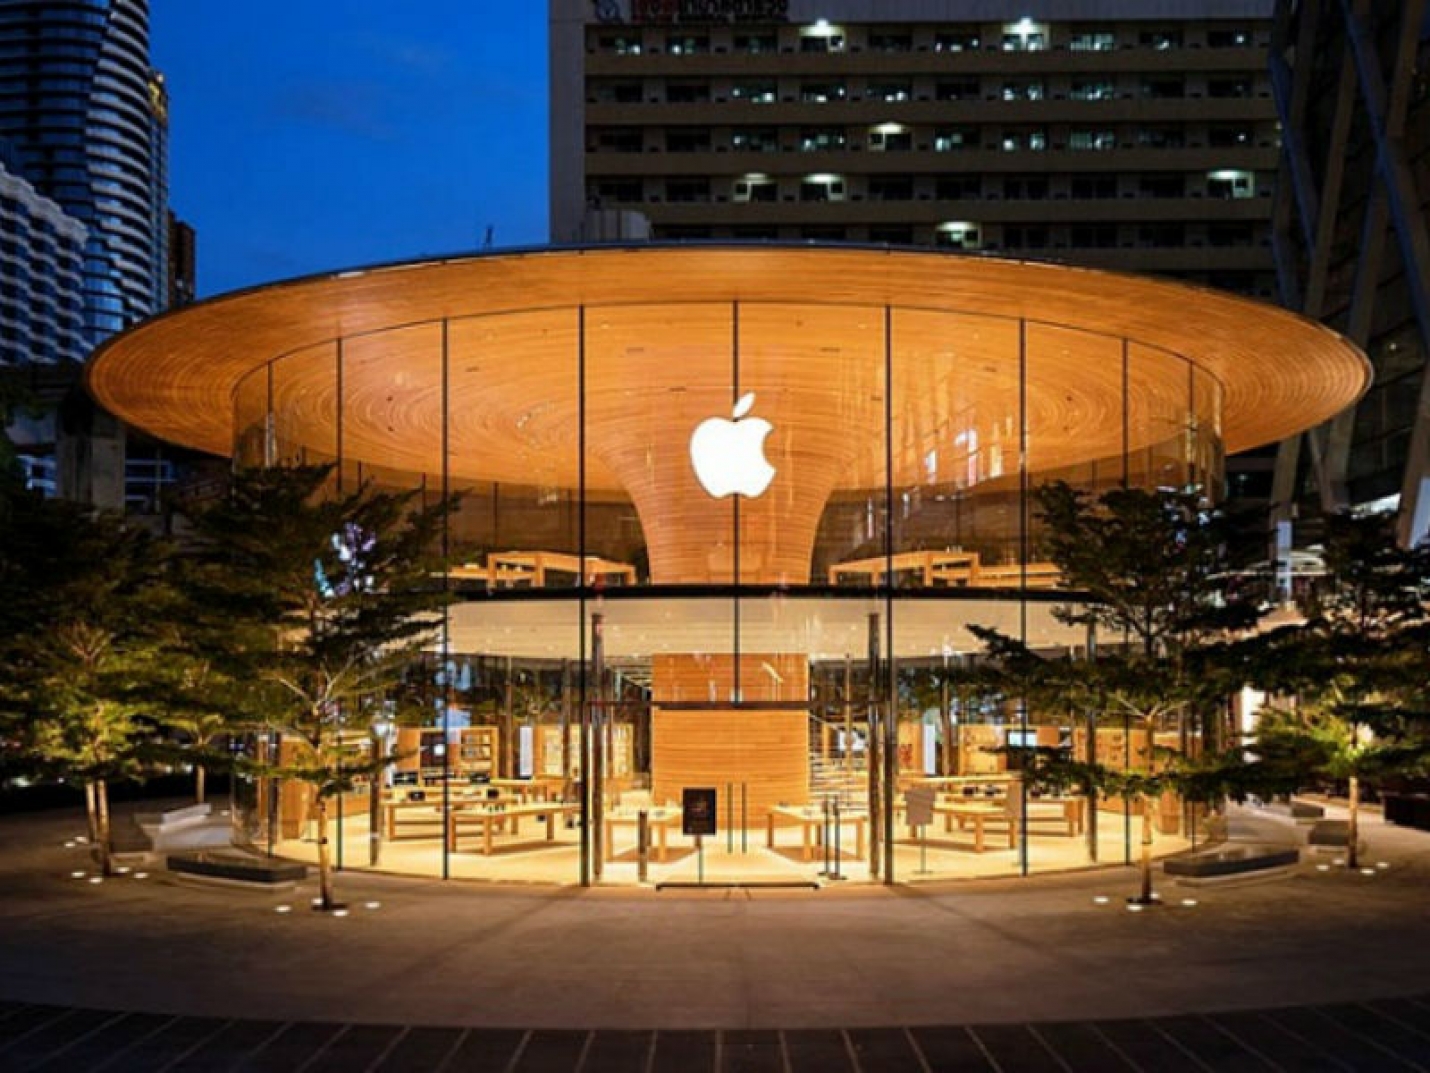 В Таиланде построили магазин Apple, похожий на советсткое здание в Сочи